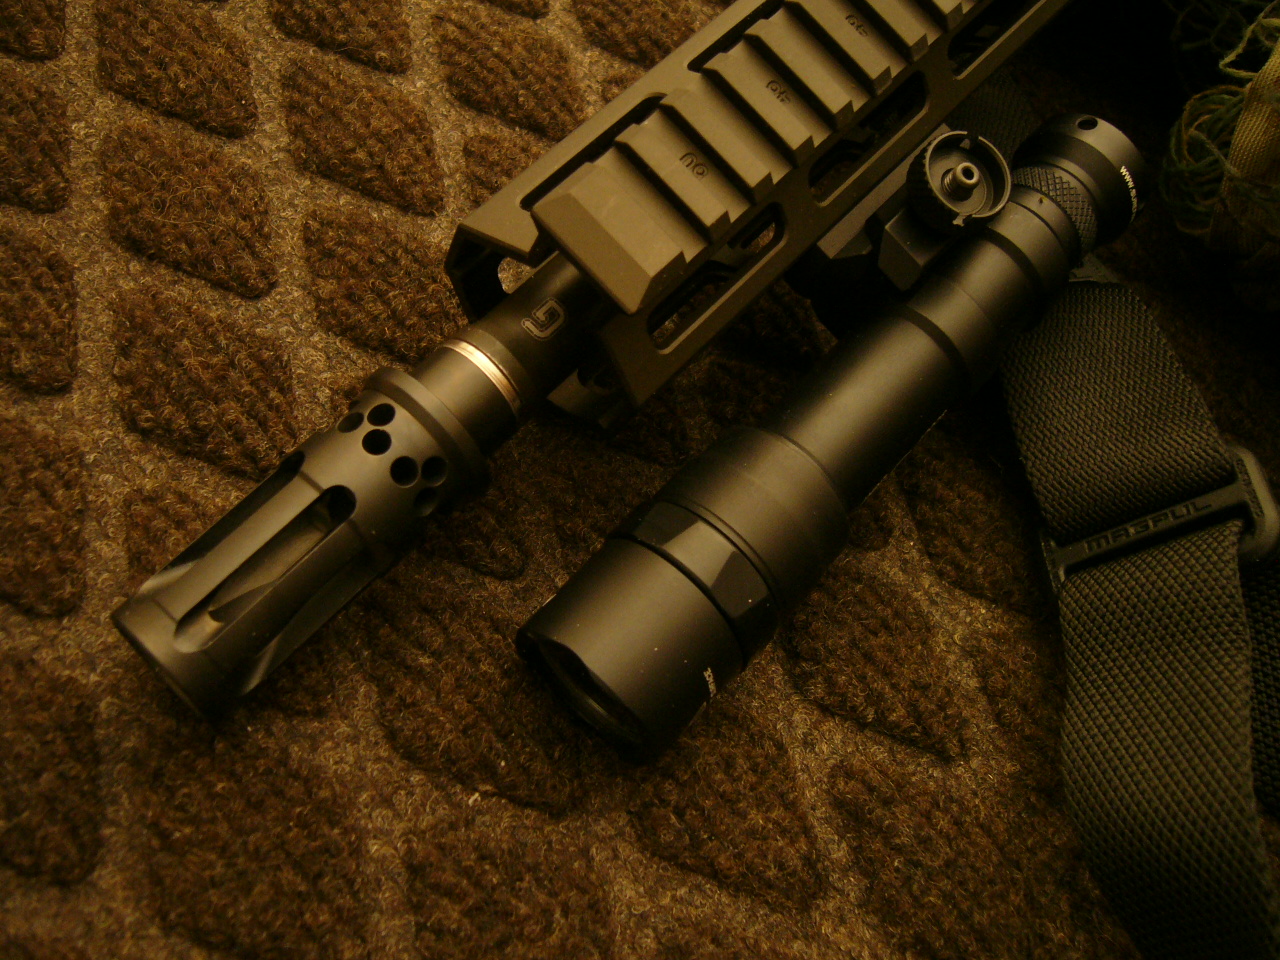 Geissele M4 Urgi Super Duty 556 Nato Aimpoint Comp M5 W 6 Magnifier